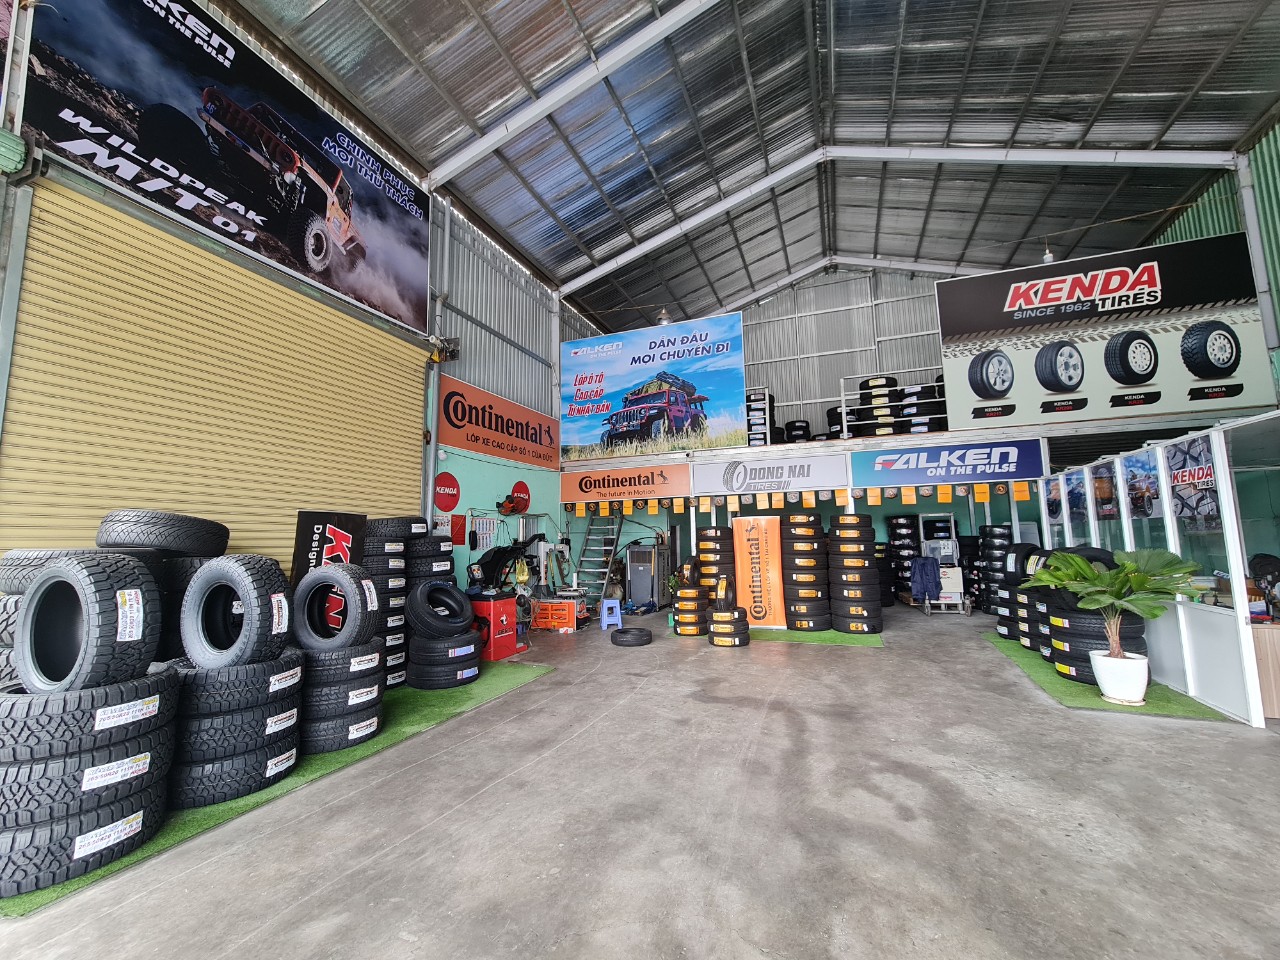 TƯ VẤN : Địa chỉ thay lốp xe Kia Sportage chính hãng - giá tốt ở Biên Hoà Đồng Nai.